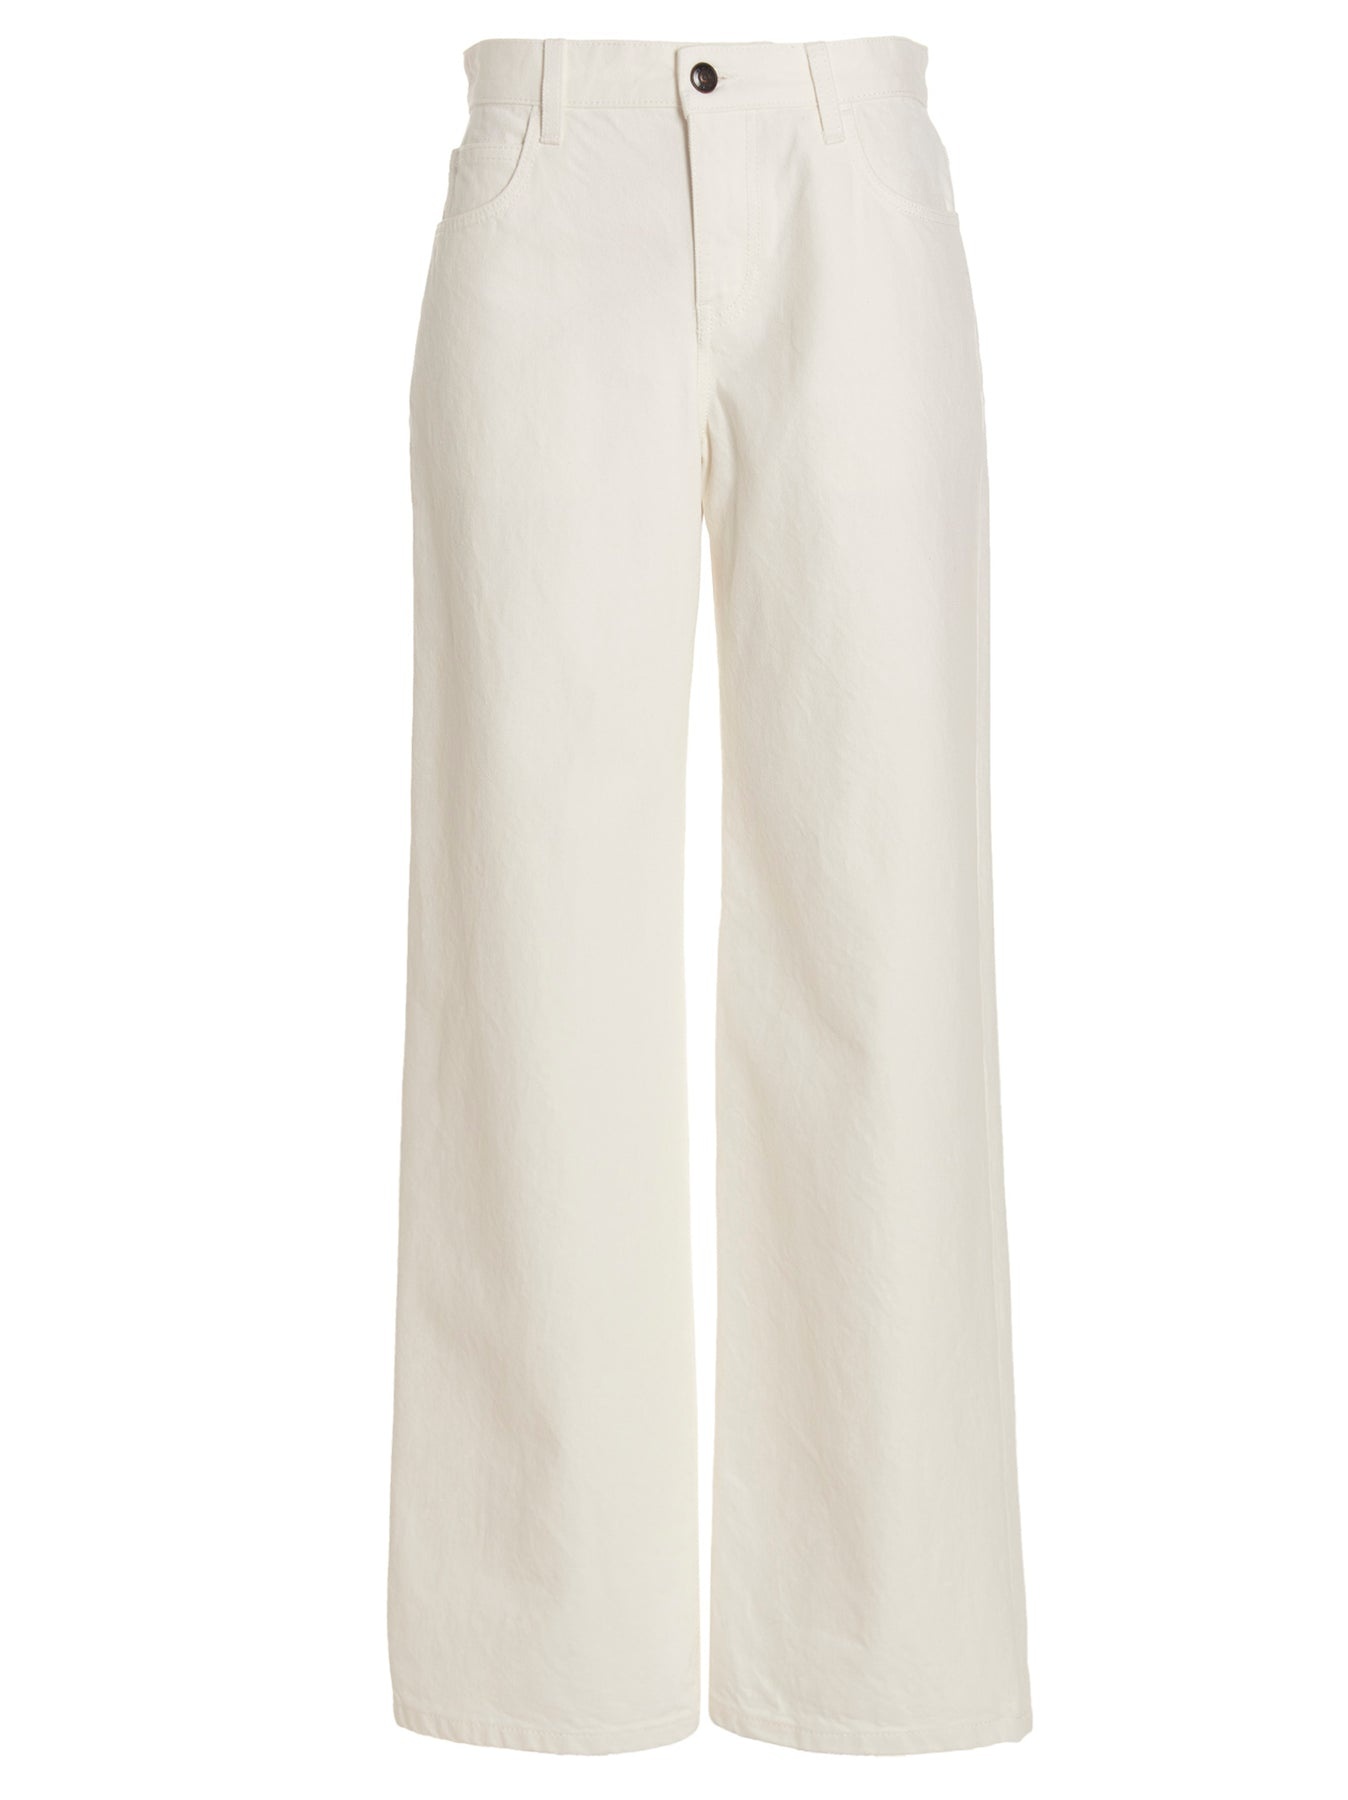 Eglitta Jeans White - 1